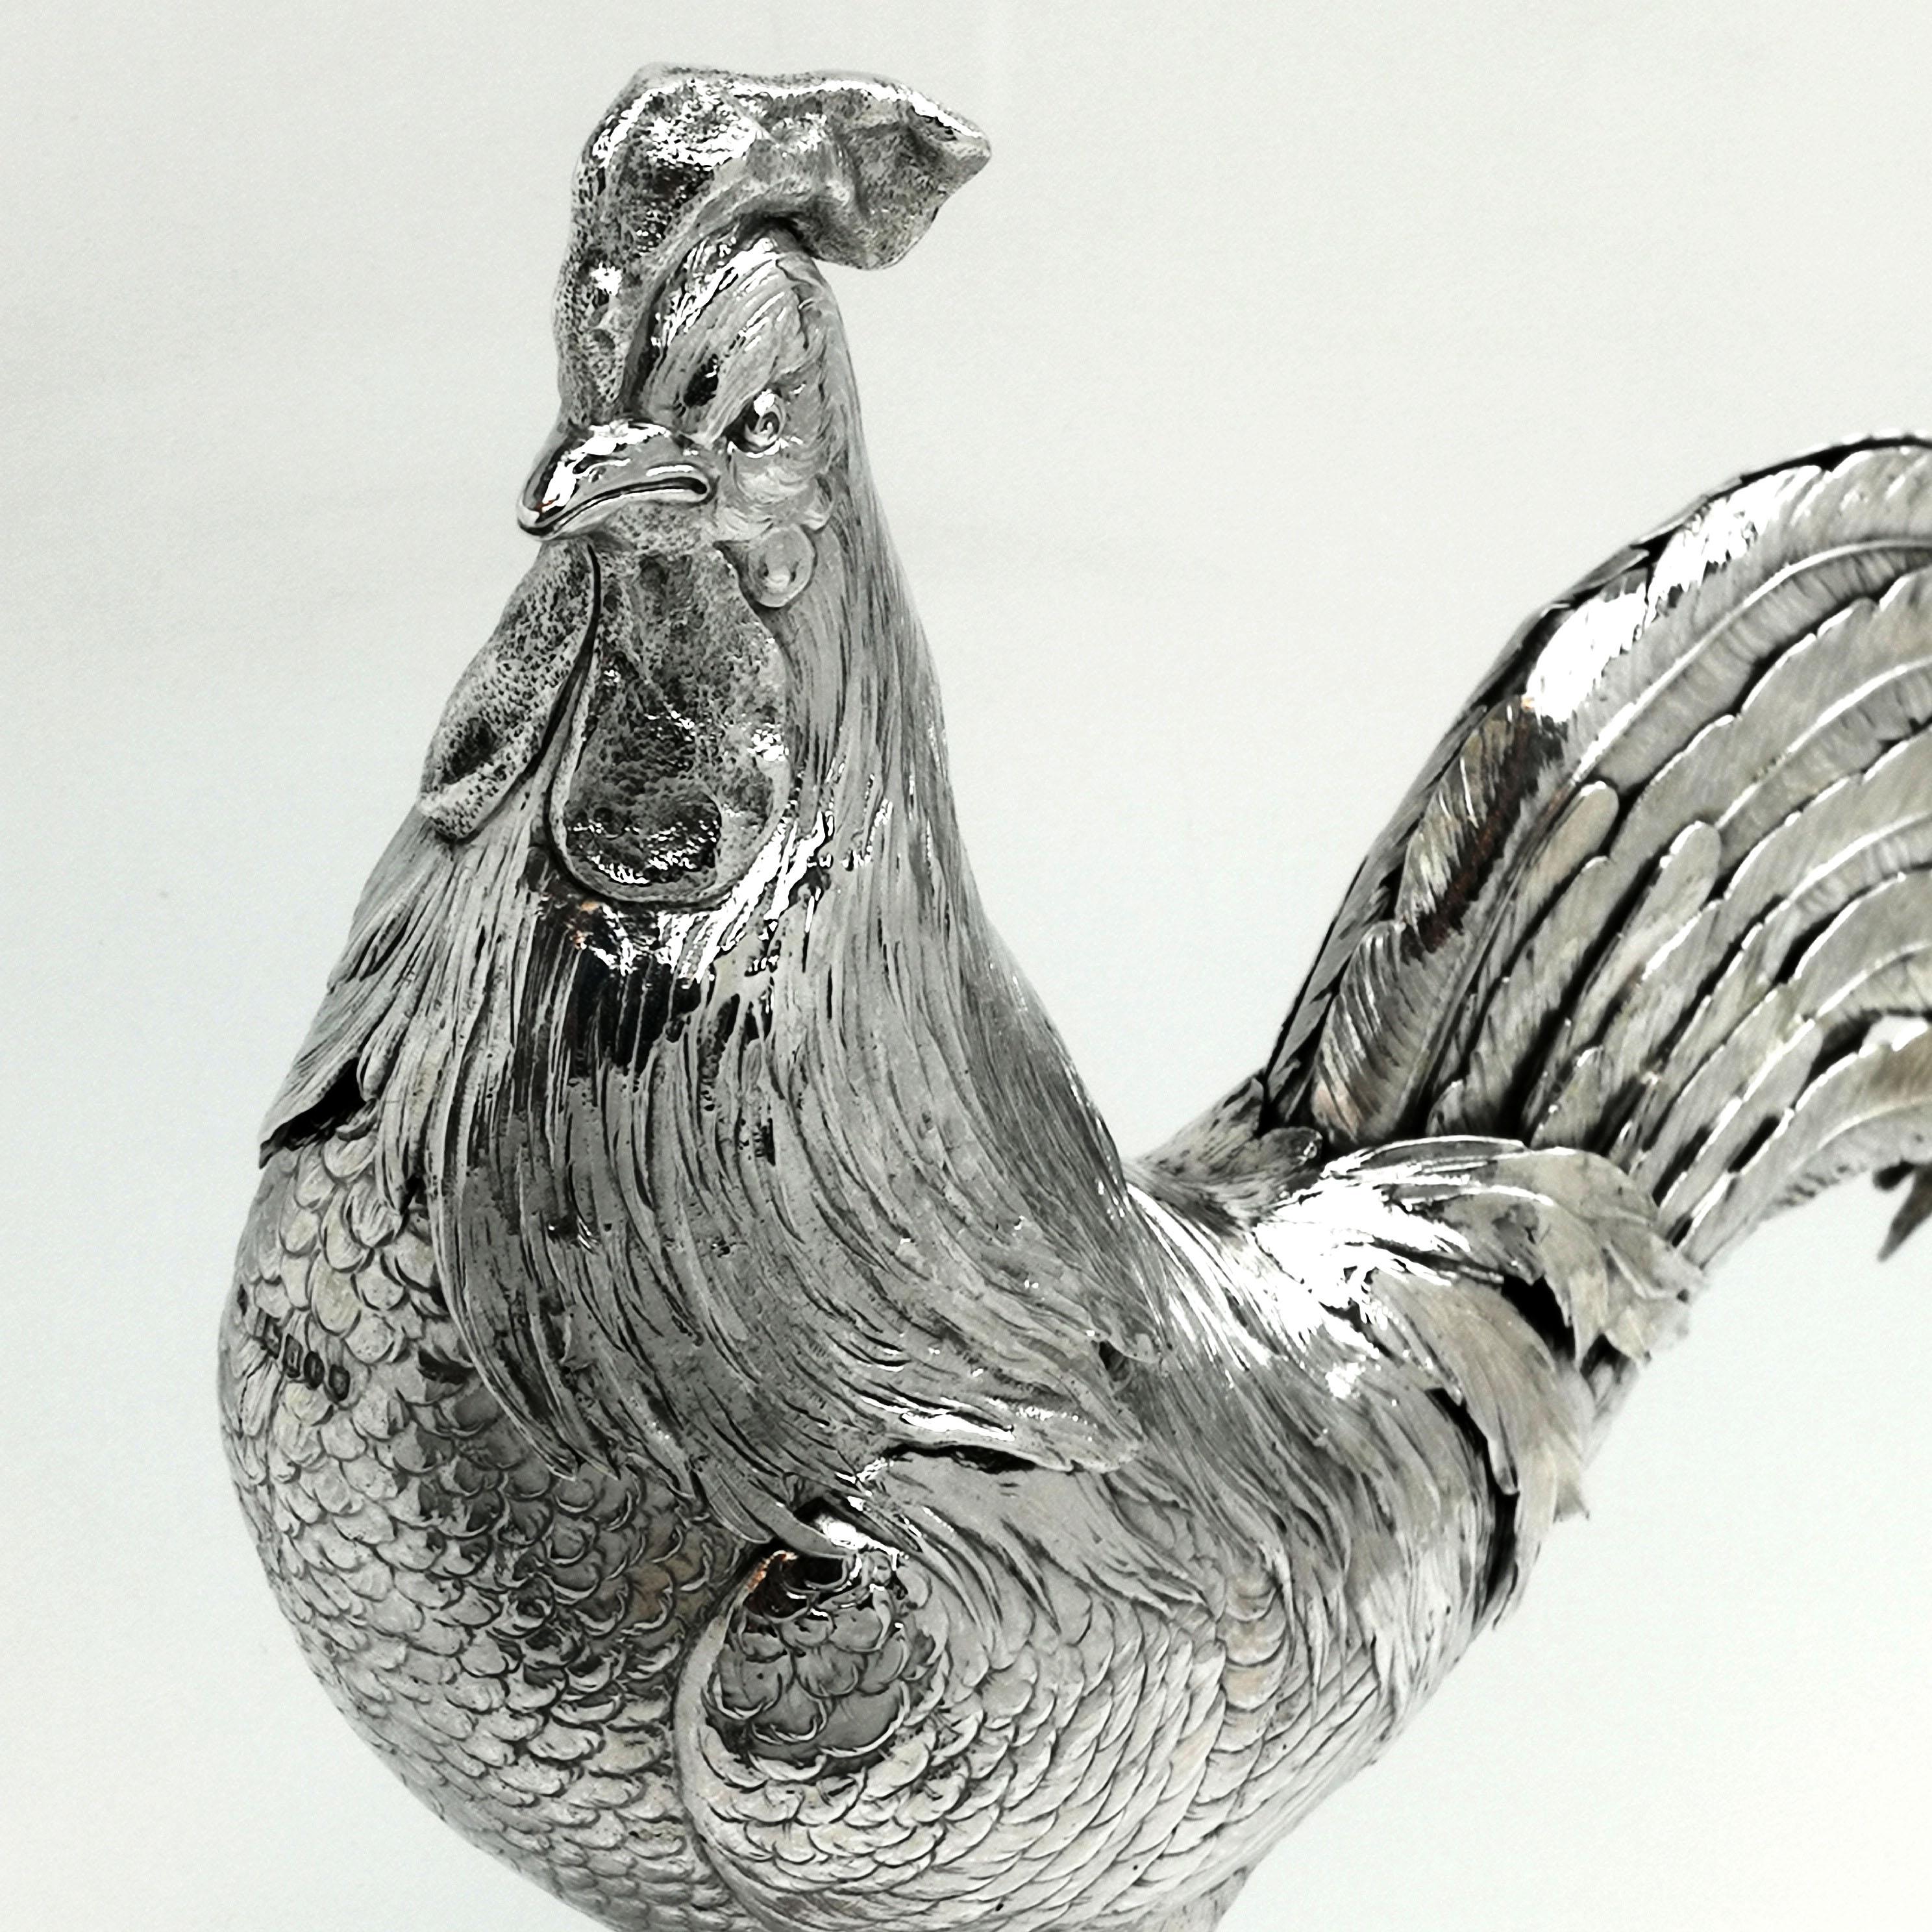 Antique German Silver Cockerel / Rooster Model Figure on Base 1899 ‘Import Mark’ For Sale 1